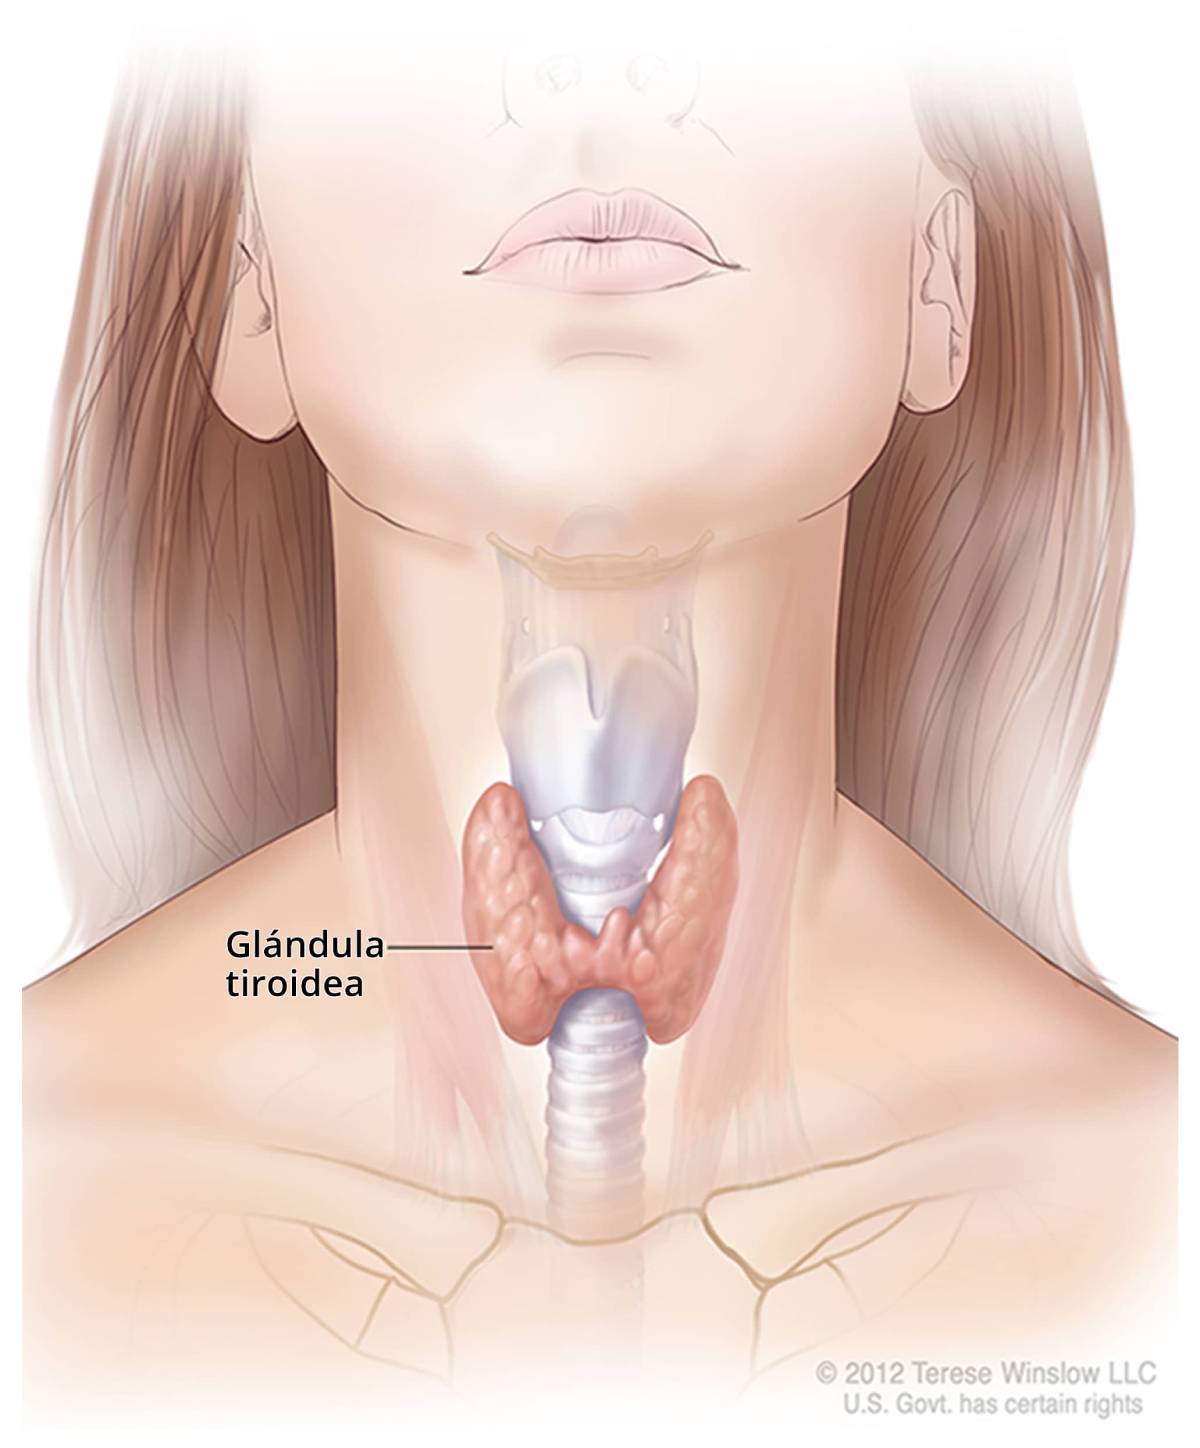 Ilustración de la glándula tiroidea y su ubicación en el cuello.